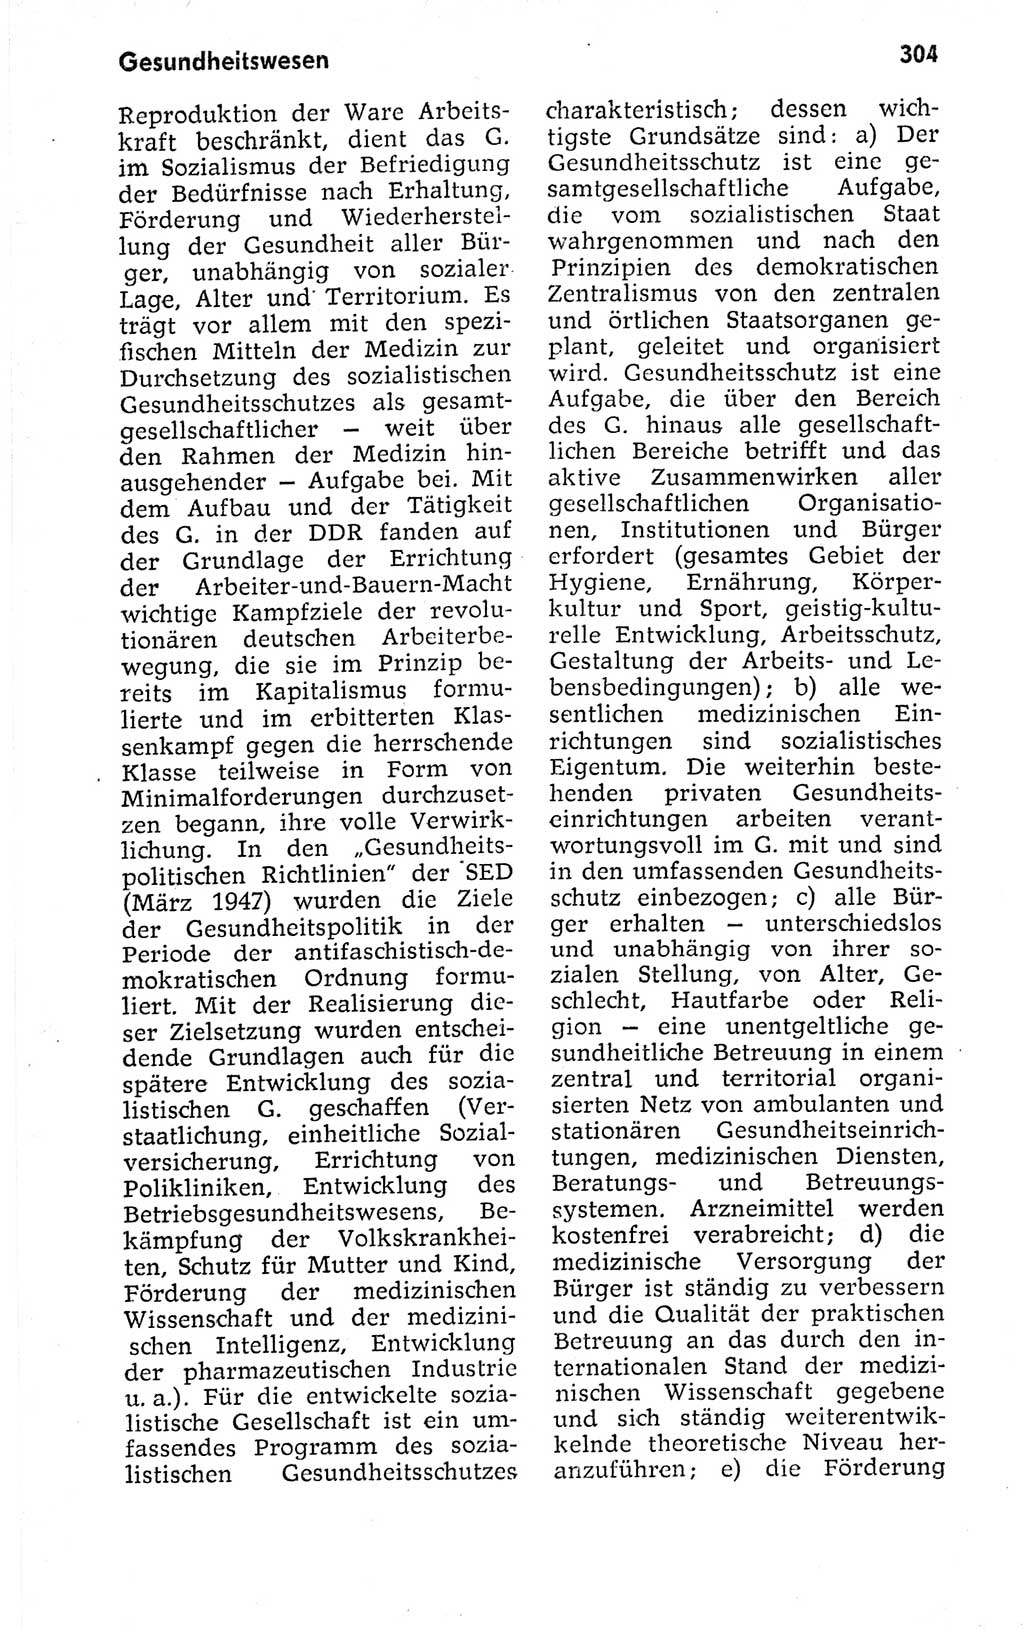 Kleines politisches Wörterbuch [Deutsche Demokratische Republik (DDR)] 1973, Seite 304 (Kl. pol. Wb. DDR 1973, S. 304)